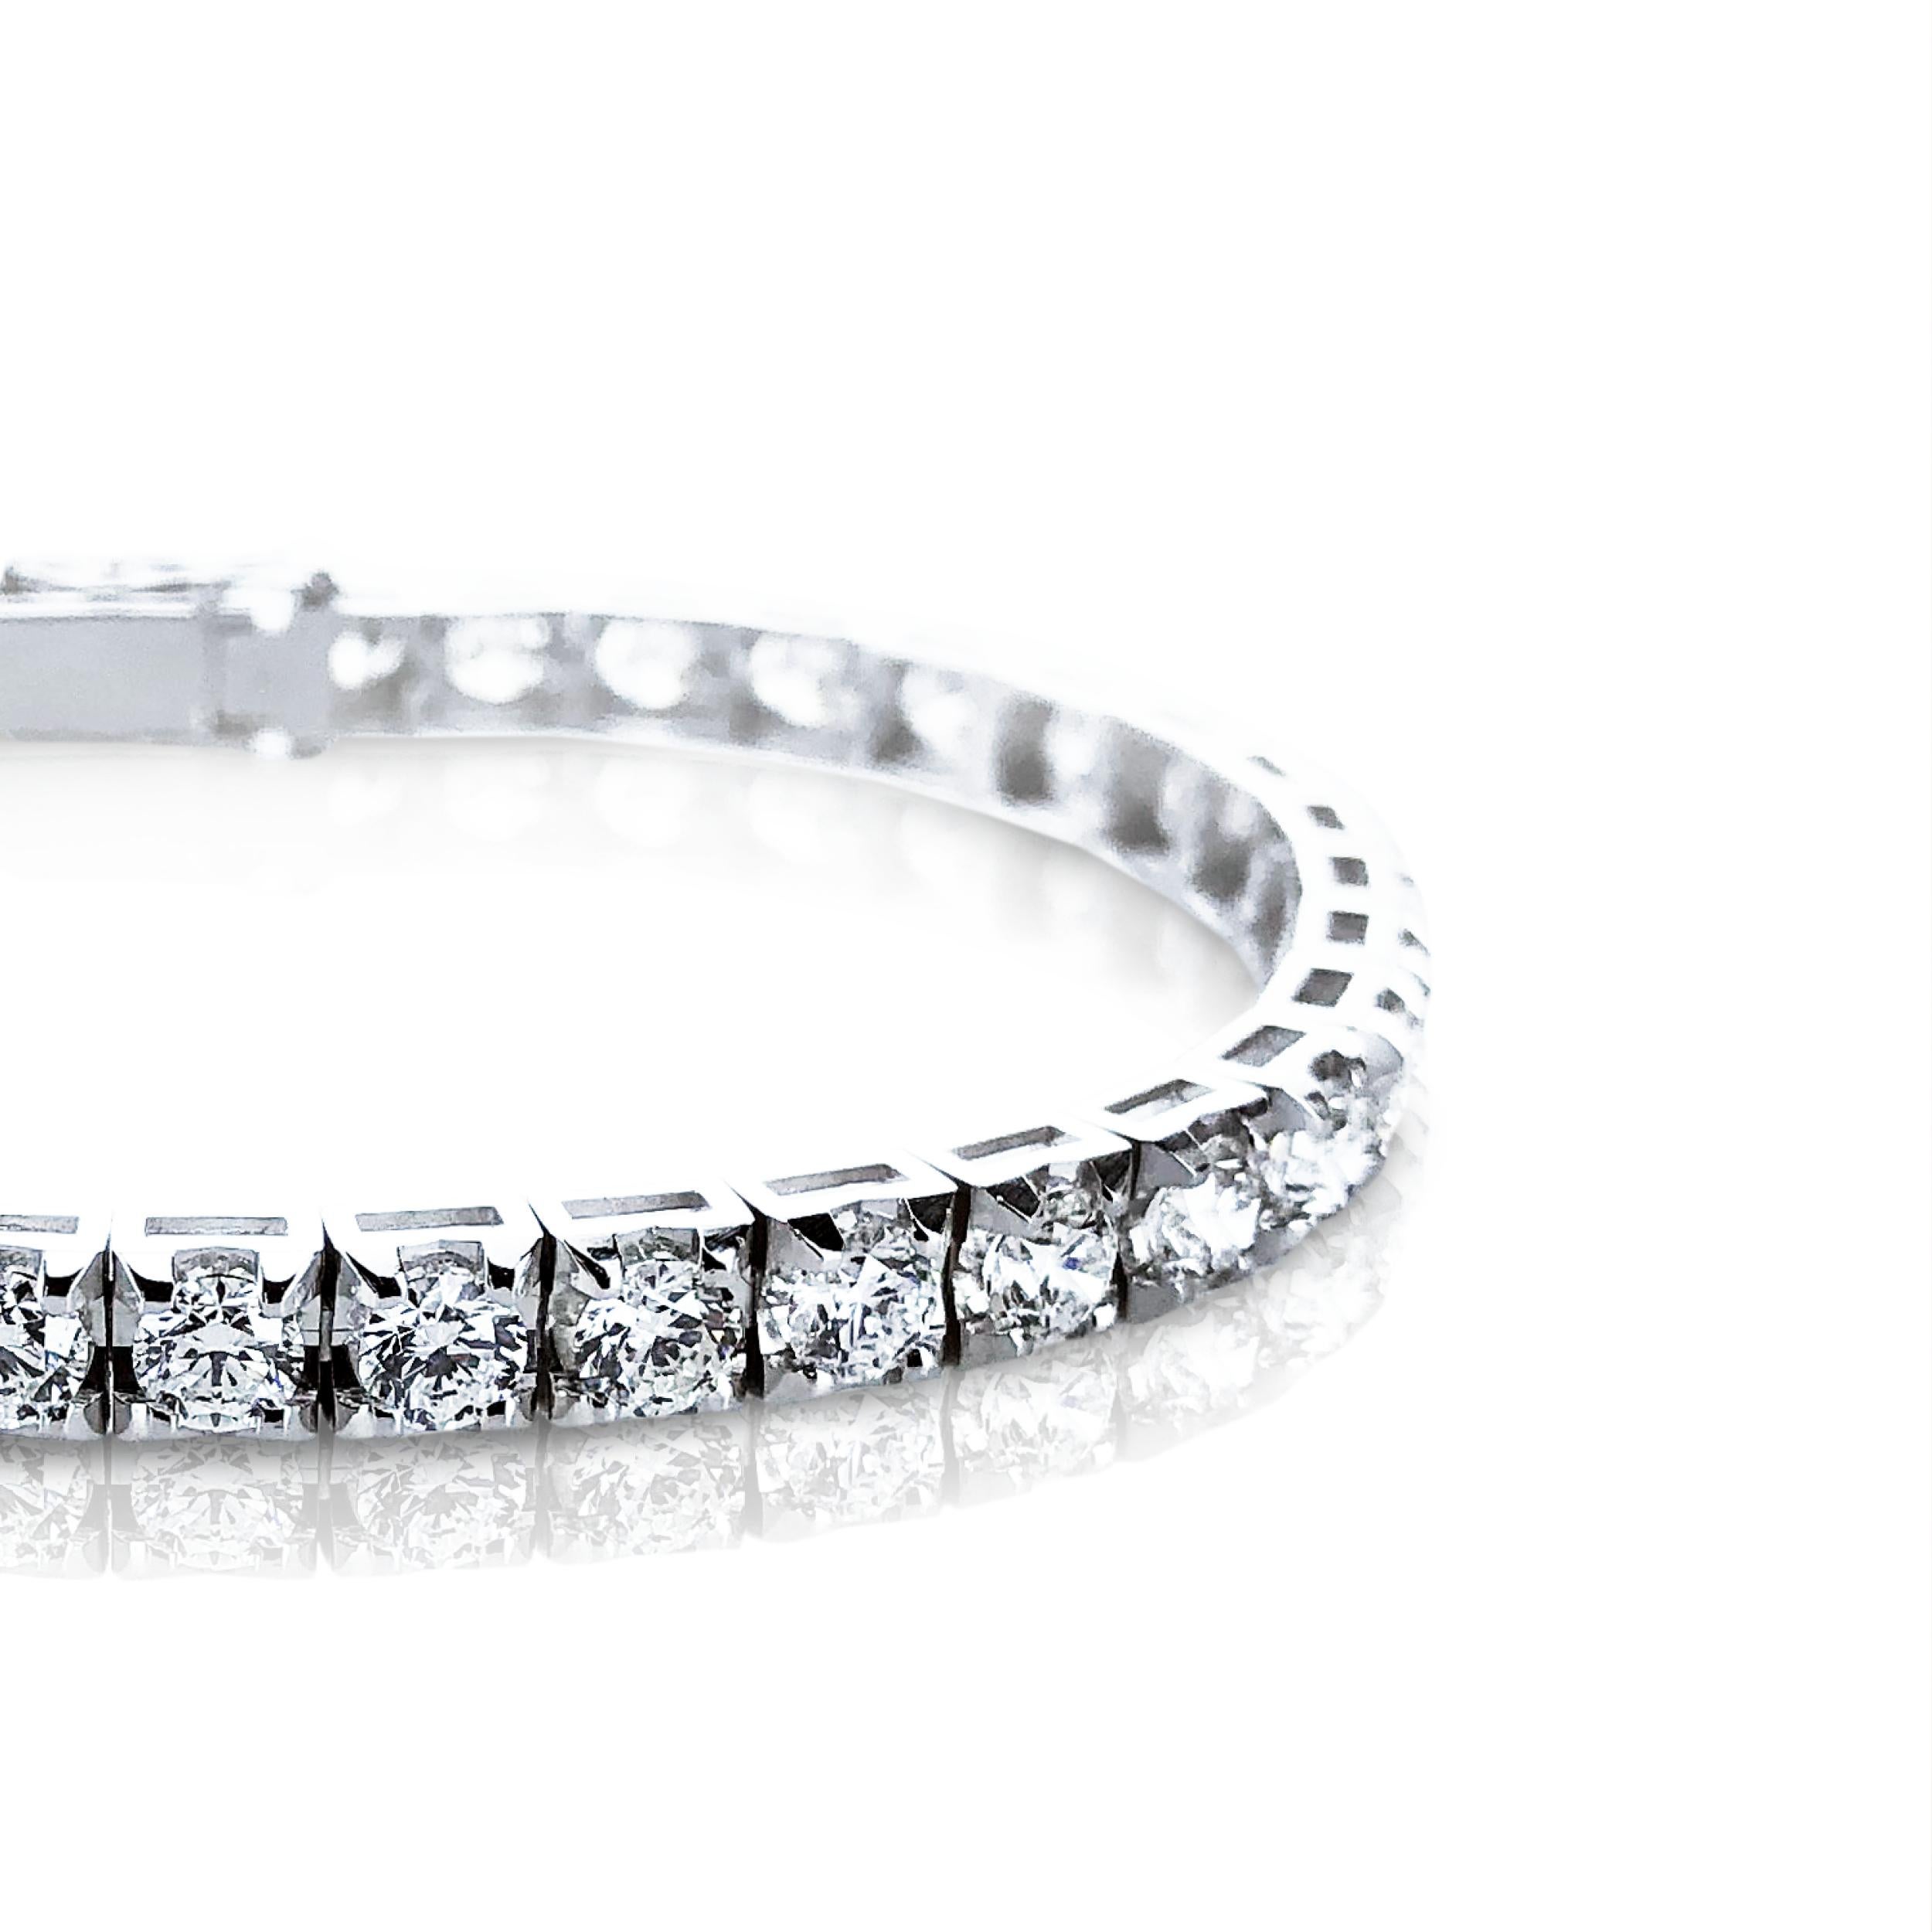 Ce bracelet tennis unisexe en diamant certifié HRD de 2,38 carats est serti en or blanc 18 carats. 

D'un style intemporel et facile à porter, il est conçu avec une monture pyramidale qui fait paraître le diamant plus grand que la normale et ajoute